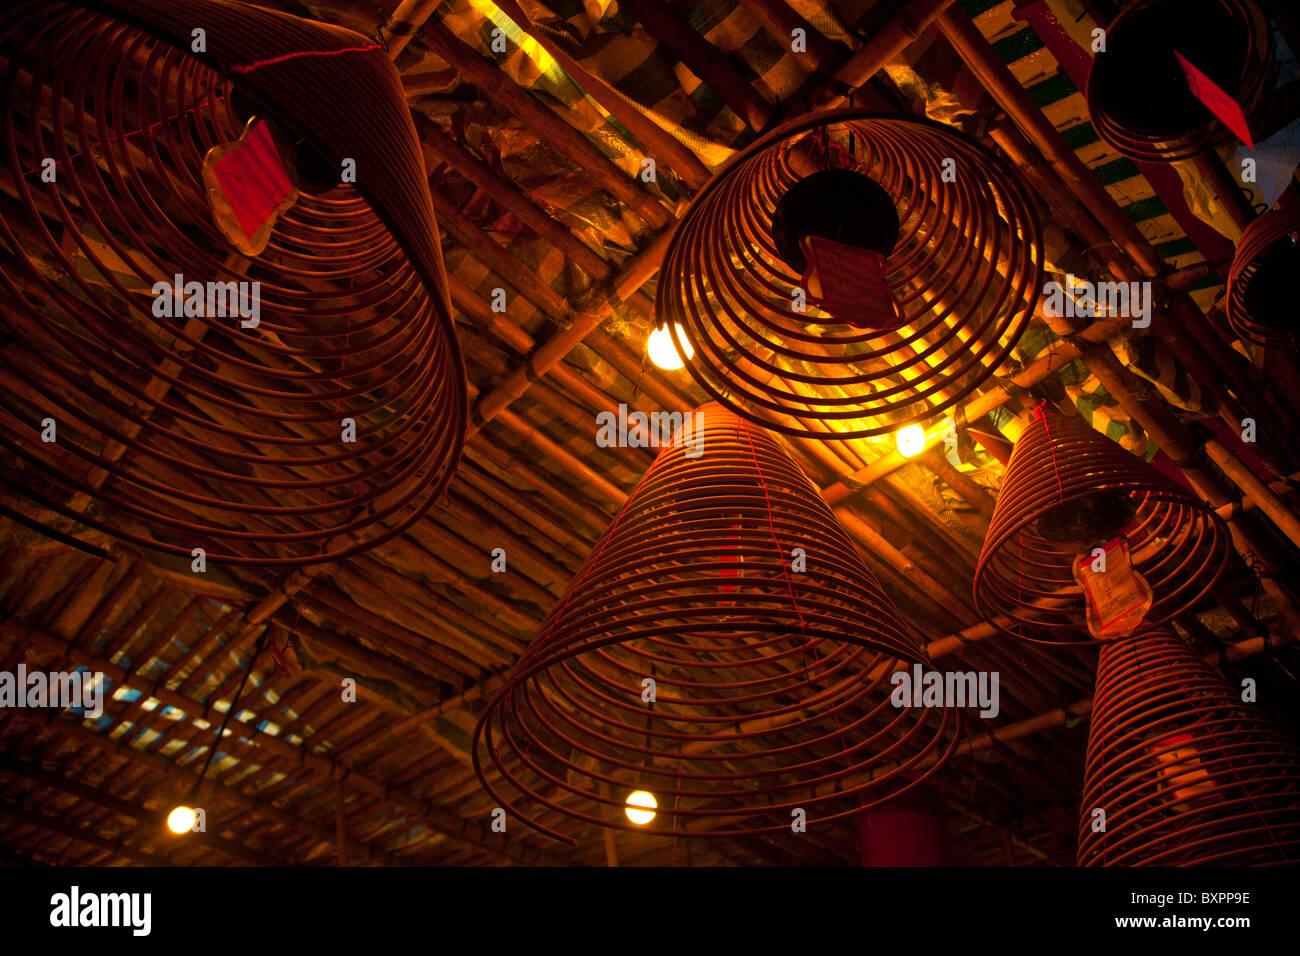 Dettaglio shot della bobina incenso con preghiere collegabile al Tempio di Man Mo in Hong Kong è 124-126 Hollywood Road, Foto Stock